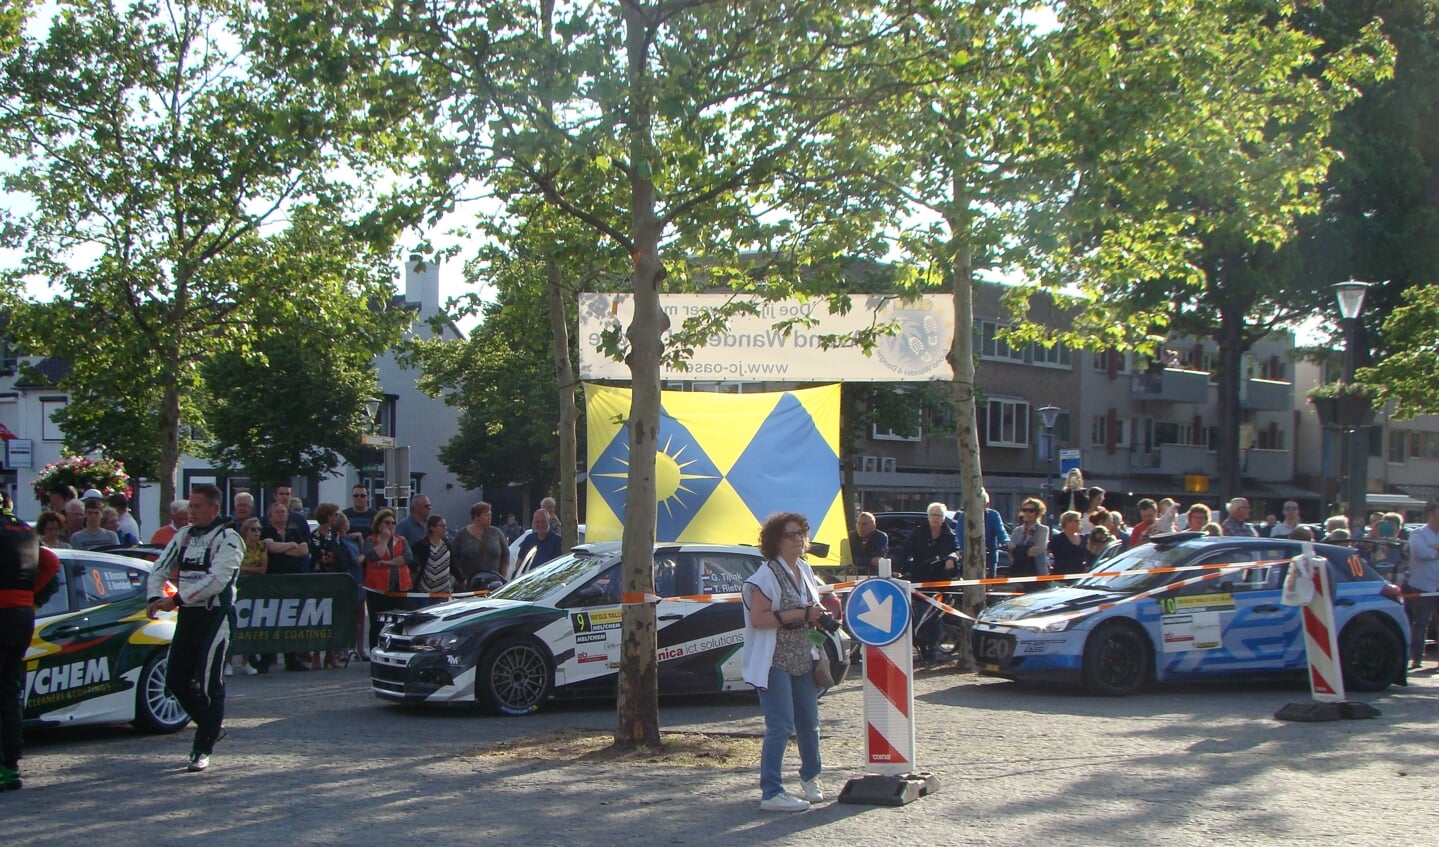 Sfeerbeelden van de ELE Rally in Son en Breugel